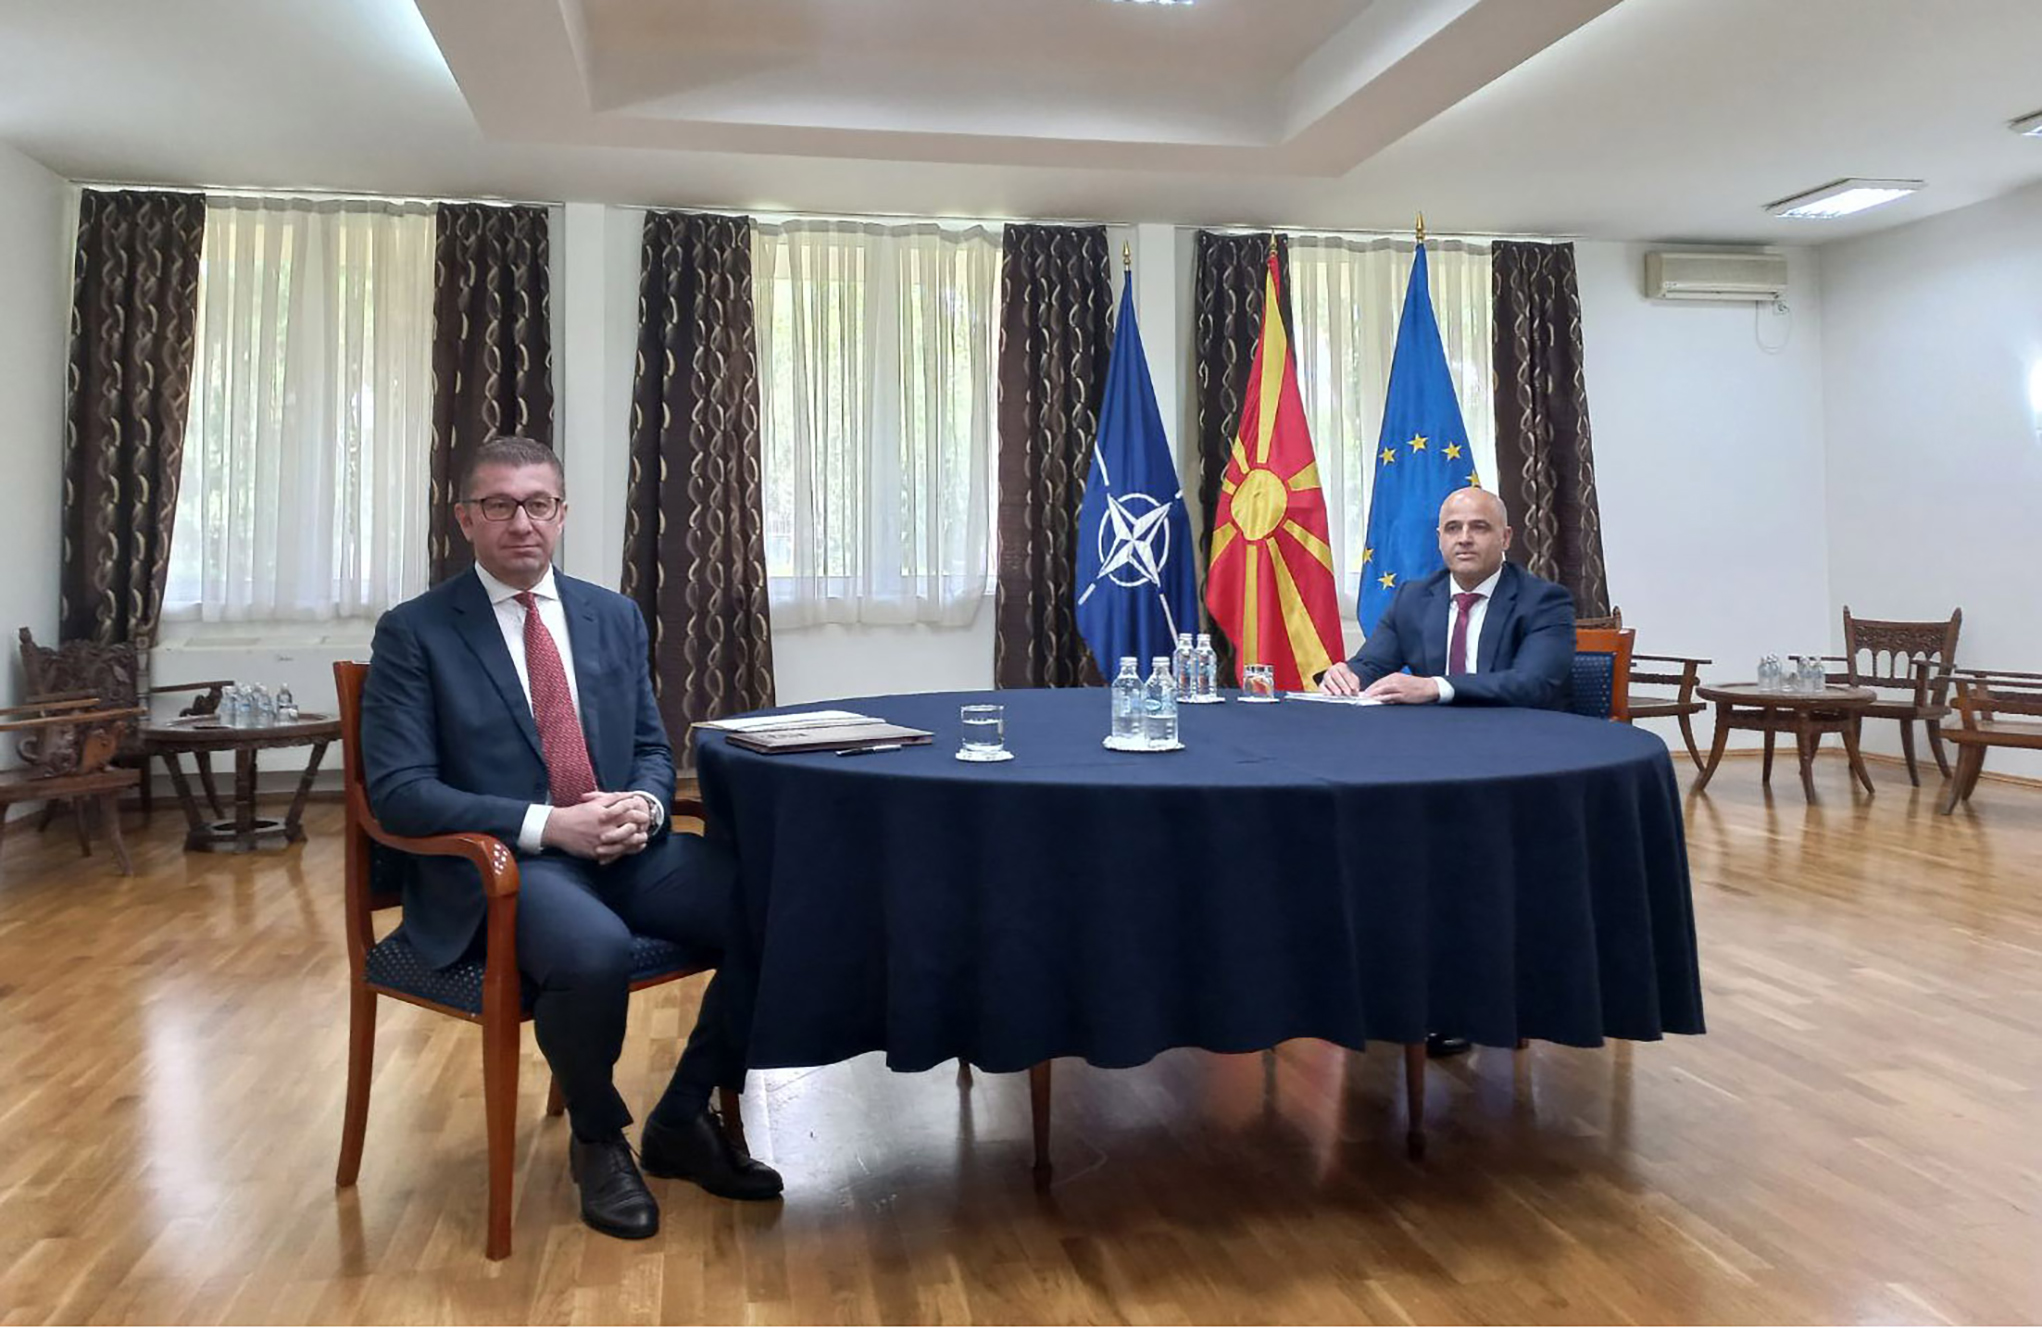 Izbori, identitet i borba za vlast u Sjevernoj Makedoniji – Ljubomir Filipović